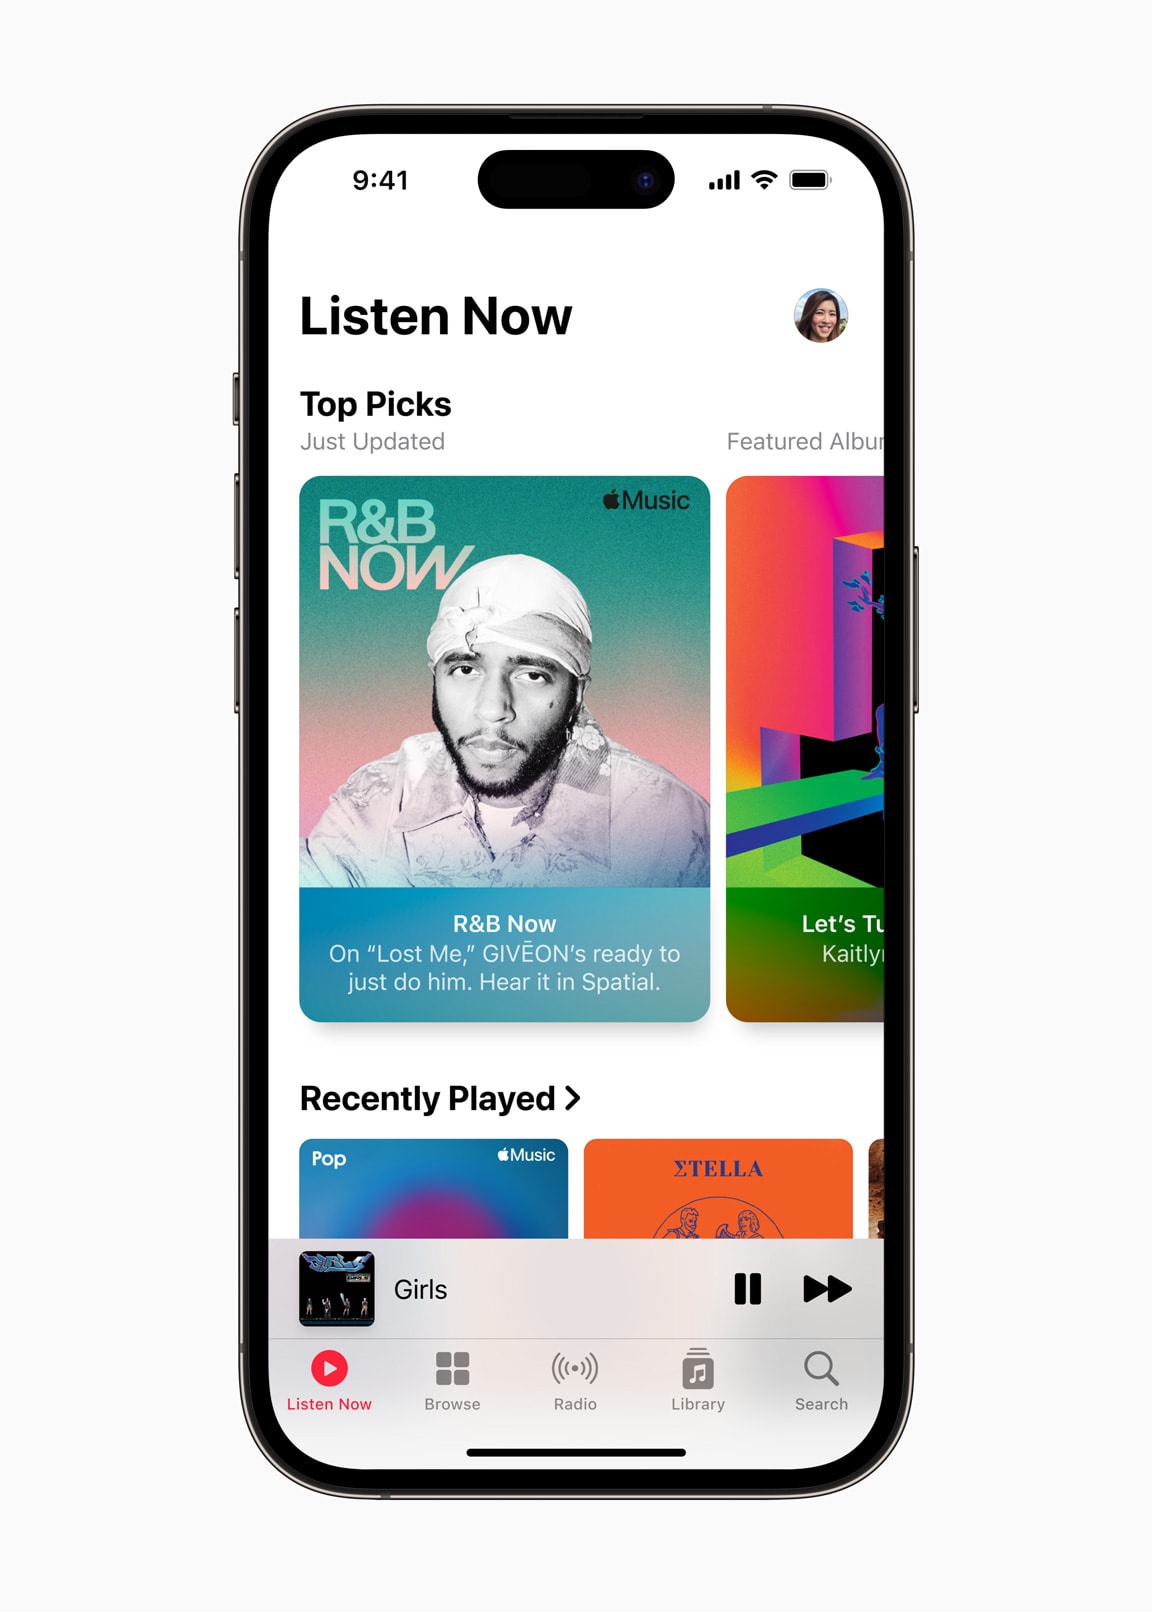 第一億首曲在 Apple Music 上架，蘋果將強化人工編排選曲、推薦更多好音樂給聽眾